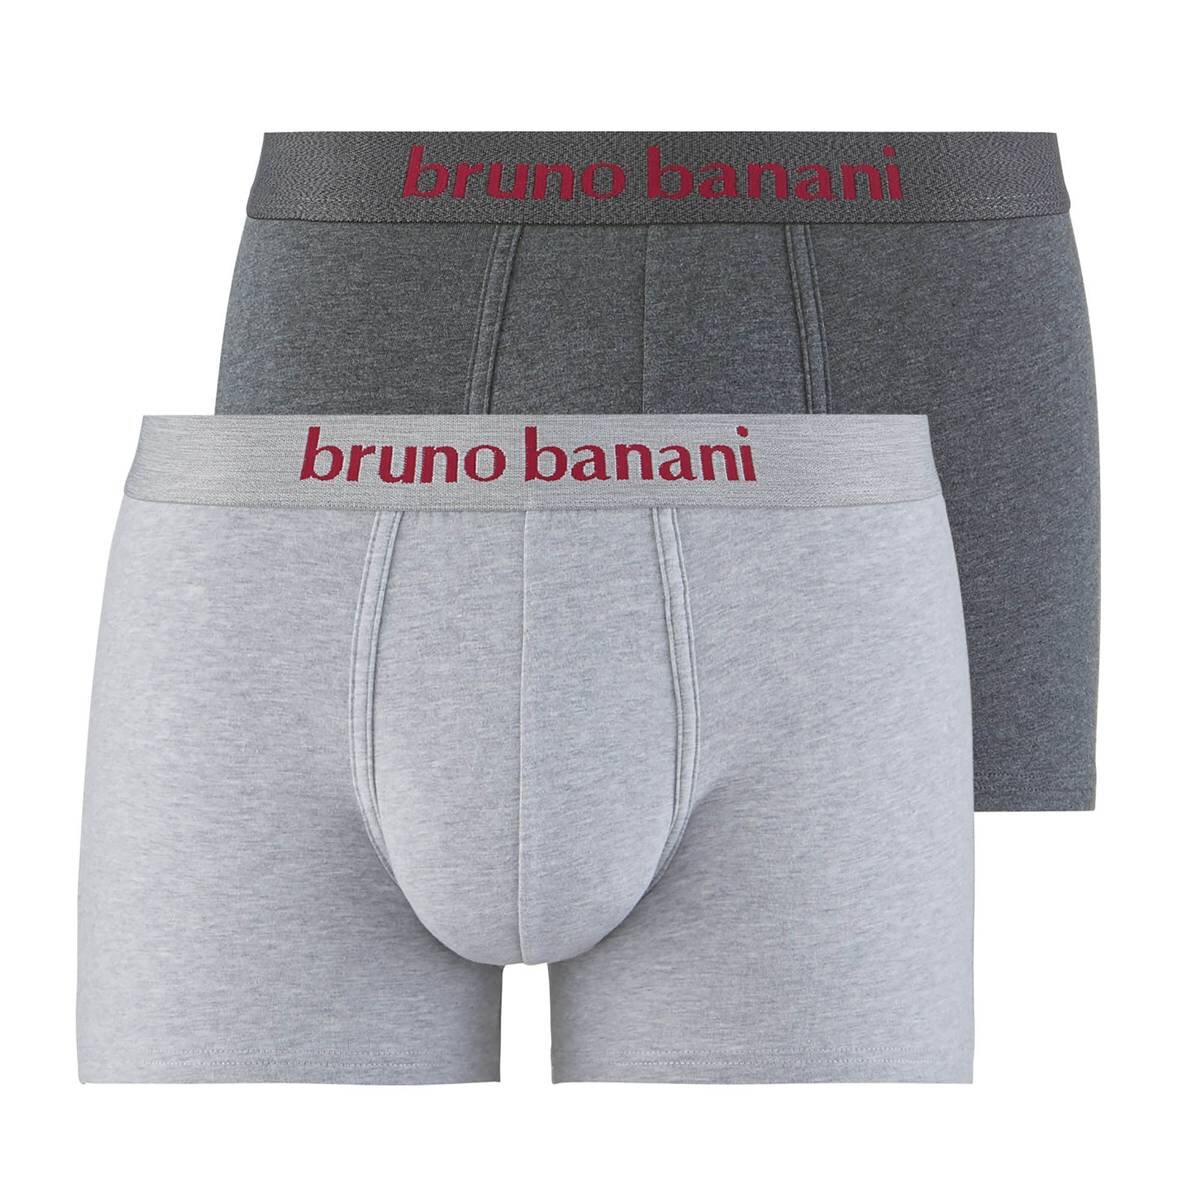 Bruno Banani Herren Boxershorts, 2er Pack - Denim Fun, Unterwäsche, U